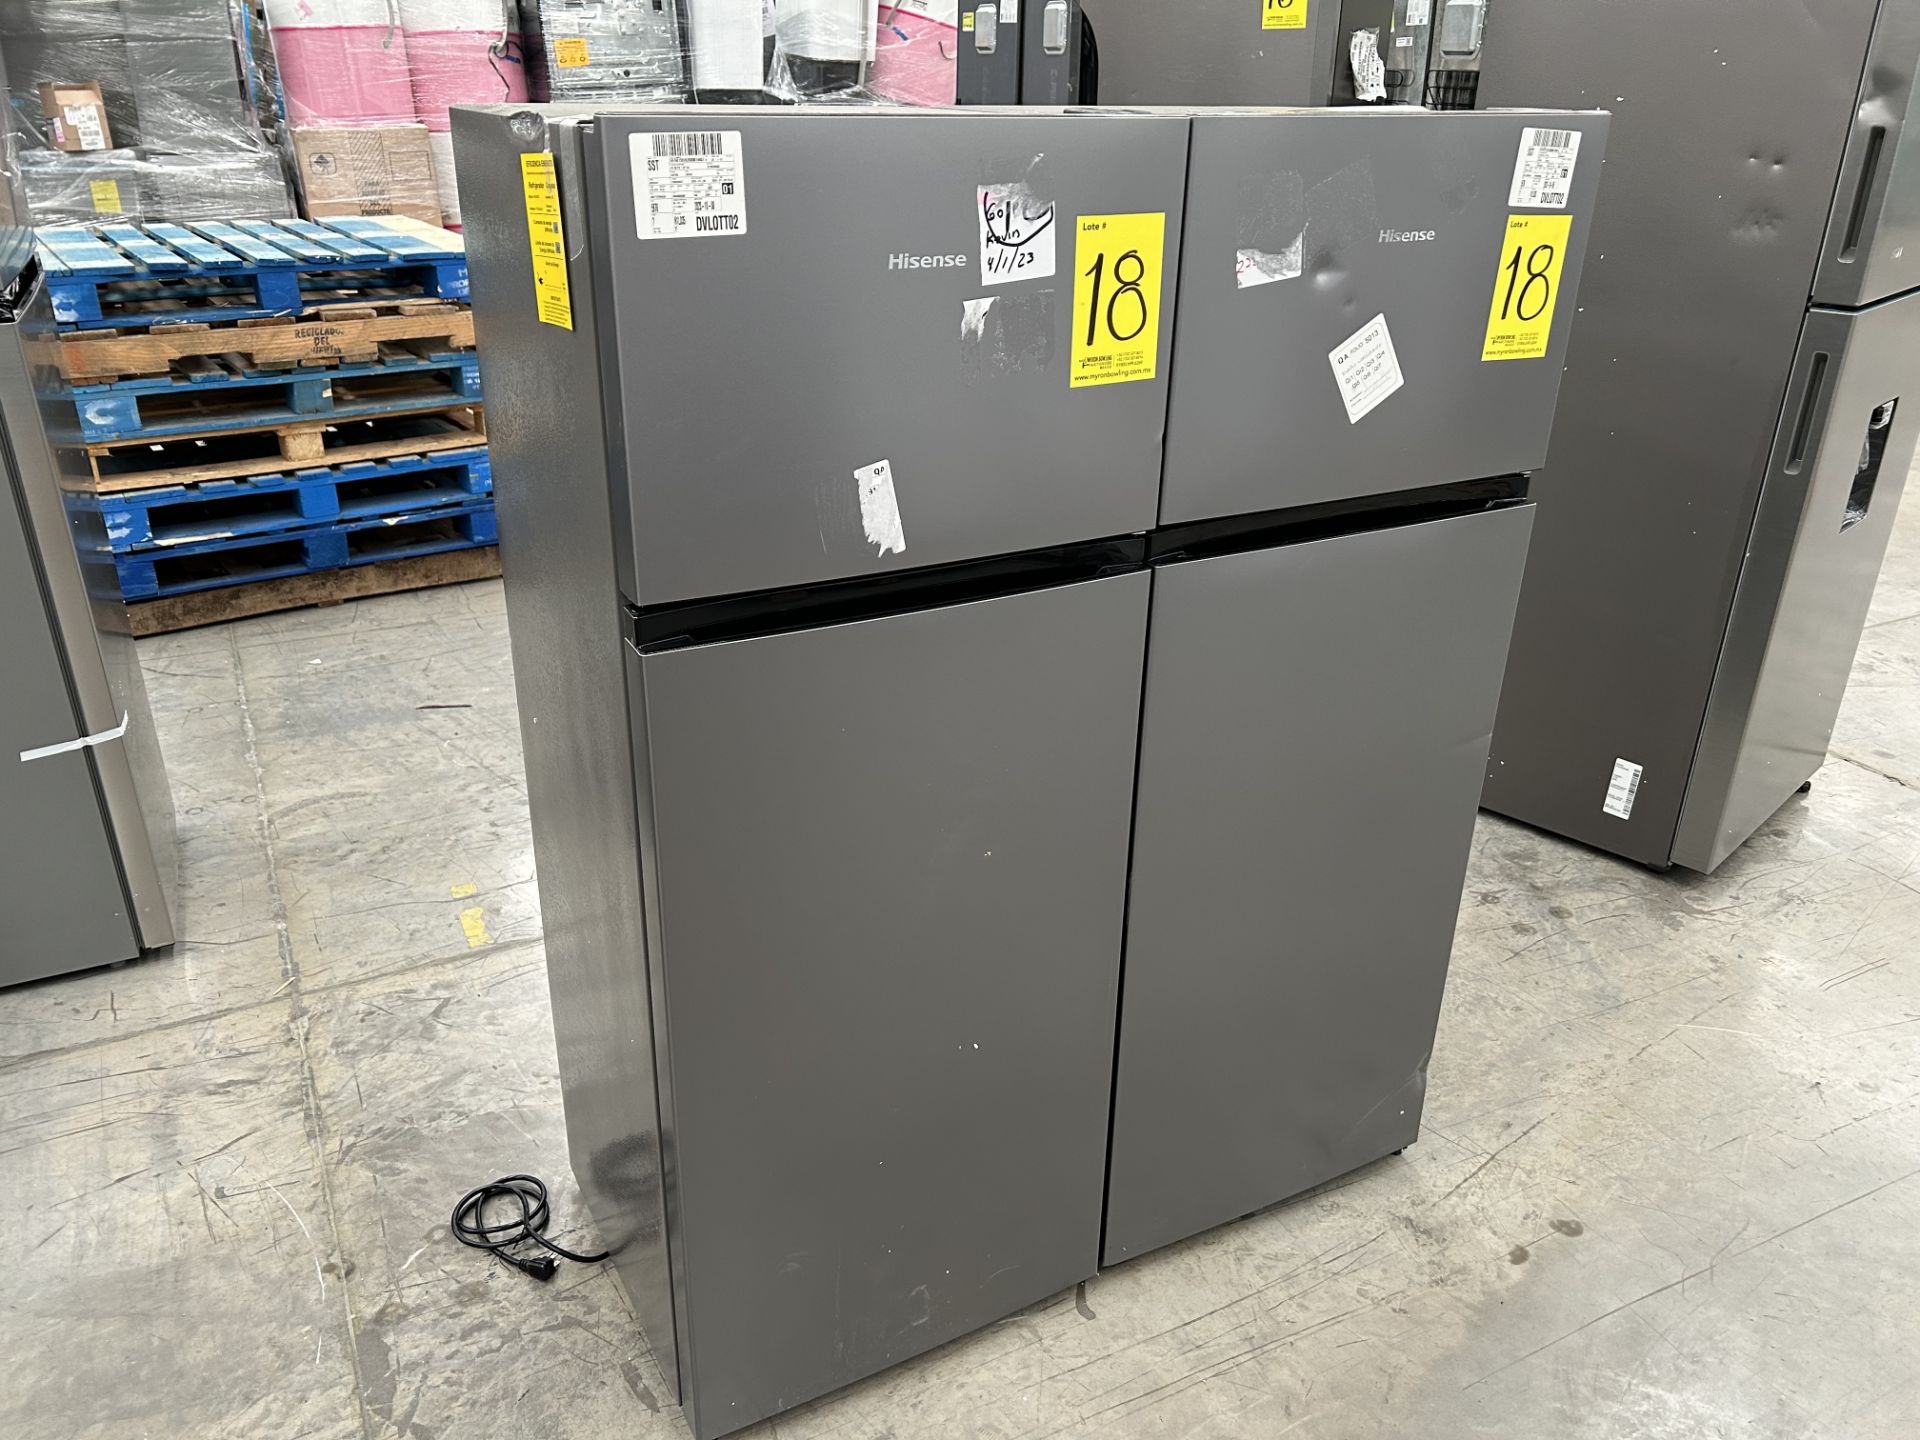 Lote de 2 Refrigeradores contiene: 1 Refrigerador Marca HISENSE, Modelo RT80D6AGX, Serie 20358, Col - Image 3 of 6